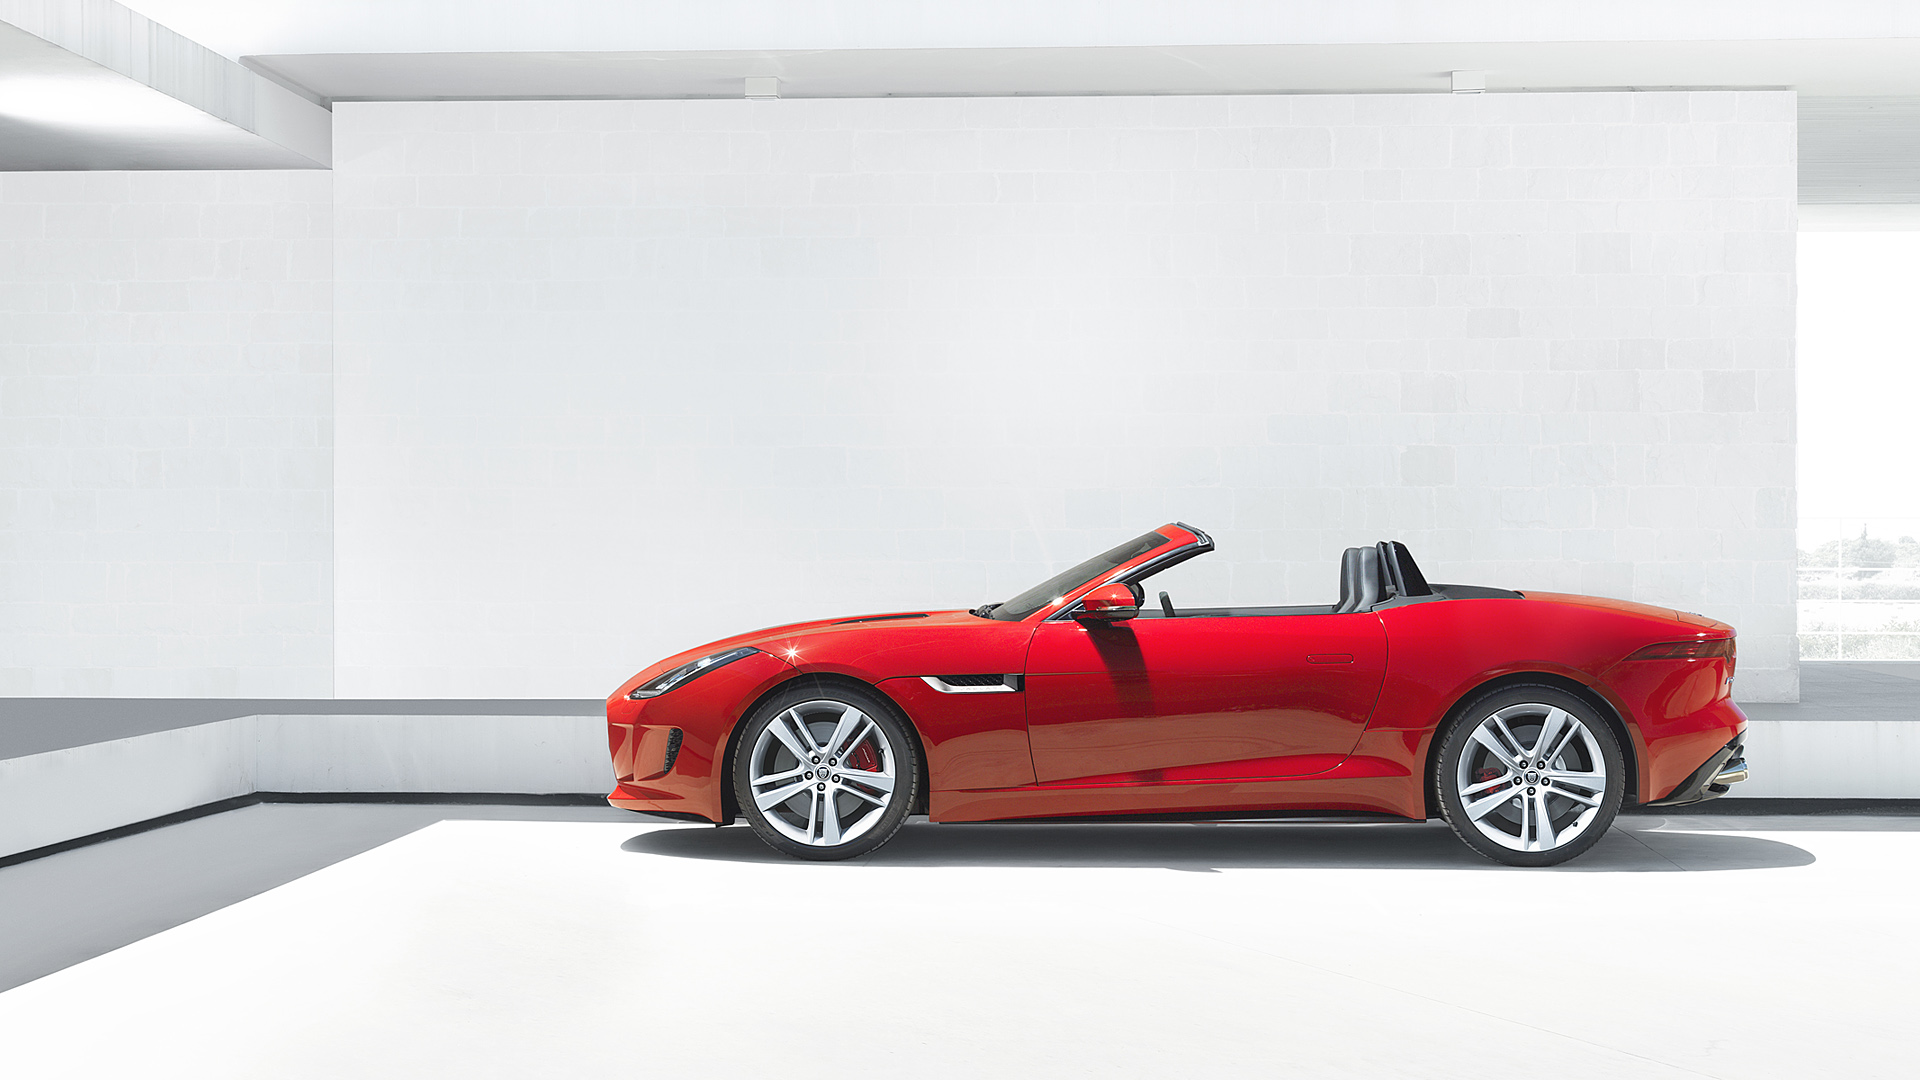  2014 Jaguar F-Type Wallpaper.